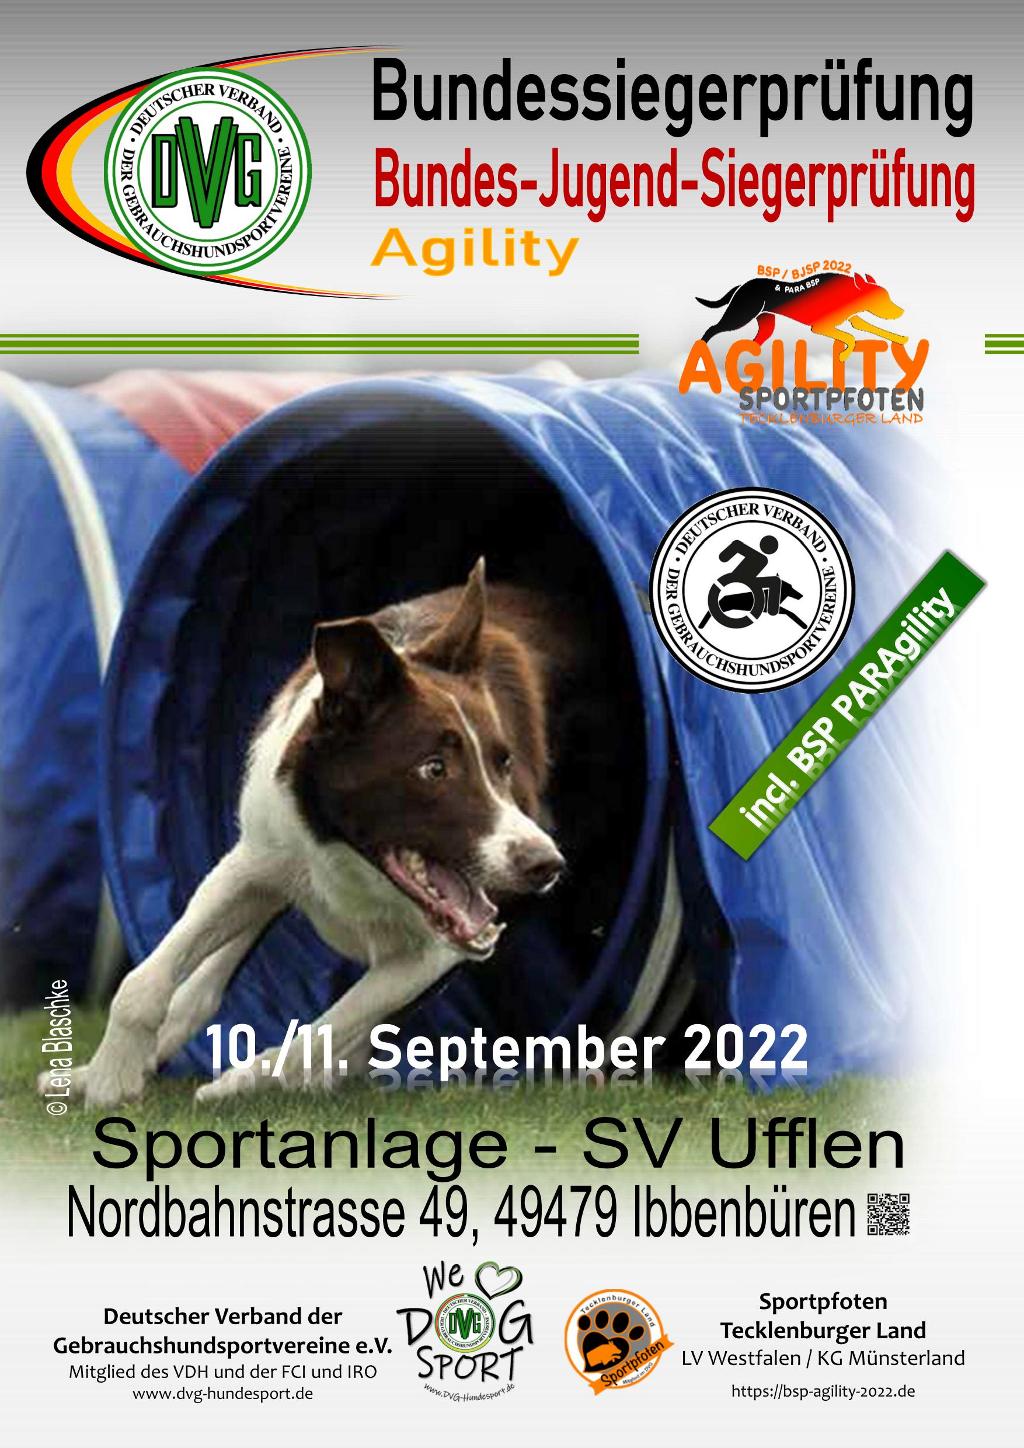 DVG Bundessiegerprüfung Agility 2022 @ Sportanlage SV Ufflen